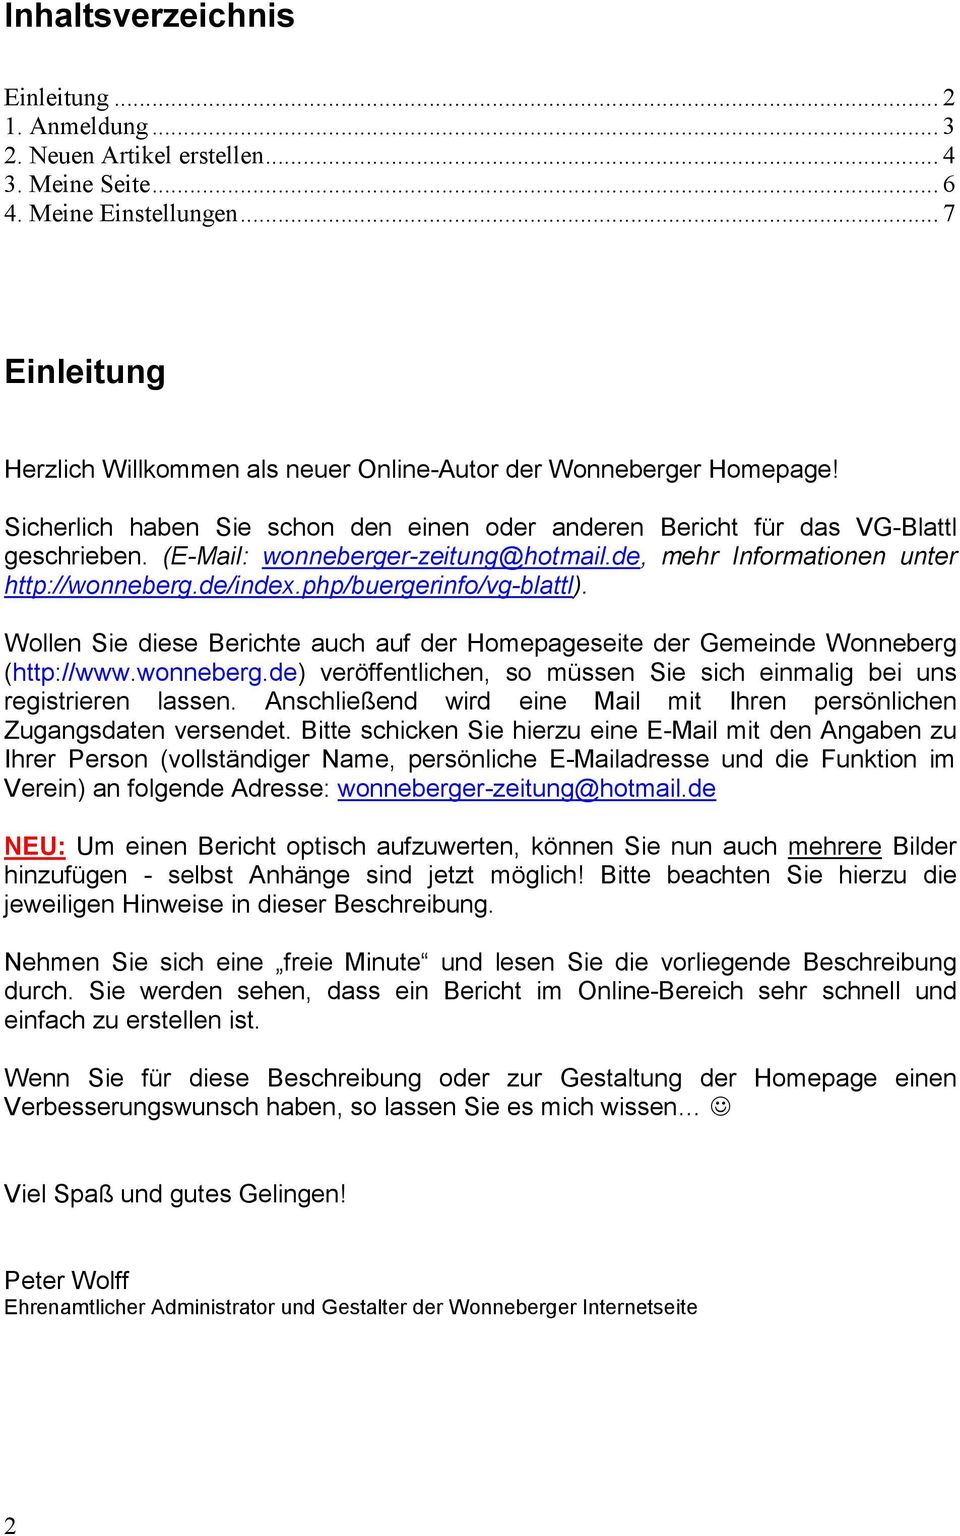 (E-Mail: wonneberger-zeitung@hotmail.de, mehr Informationen unter http://wonneberg.de/index.php/buergerinfo/vg-blattl).